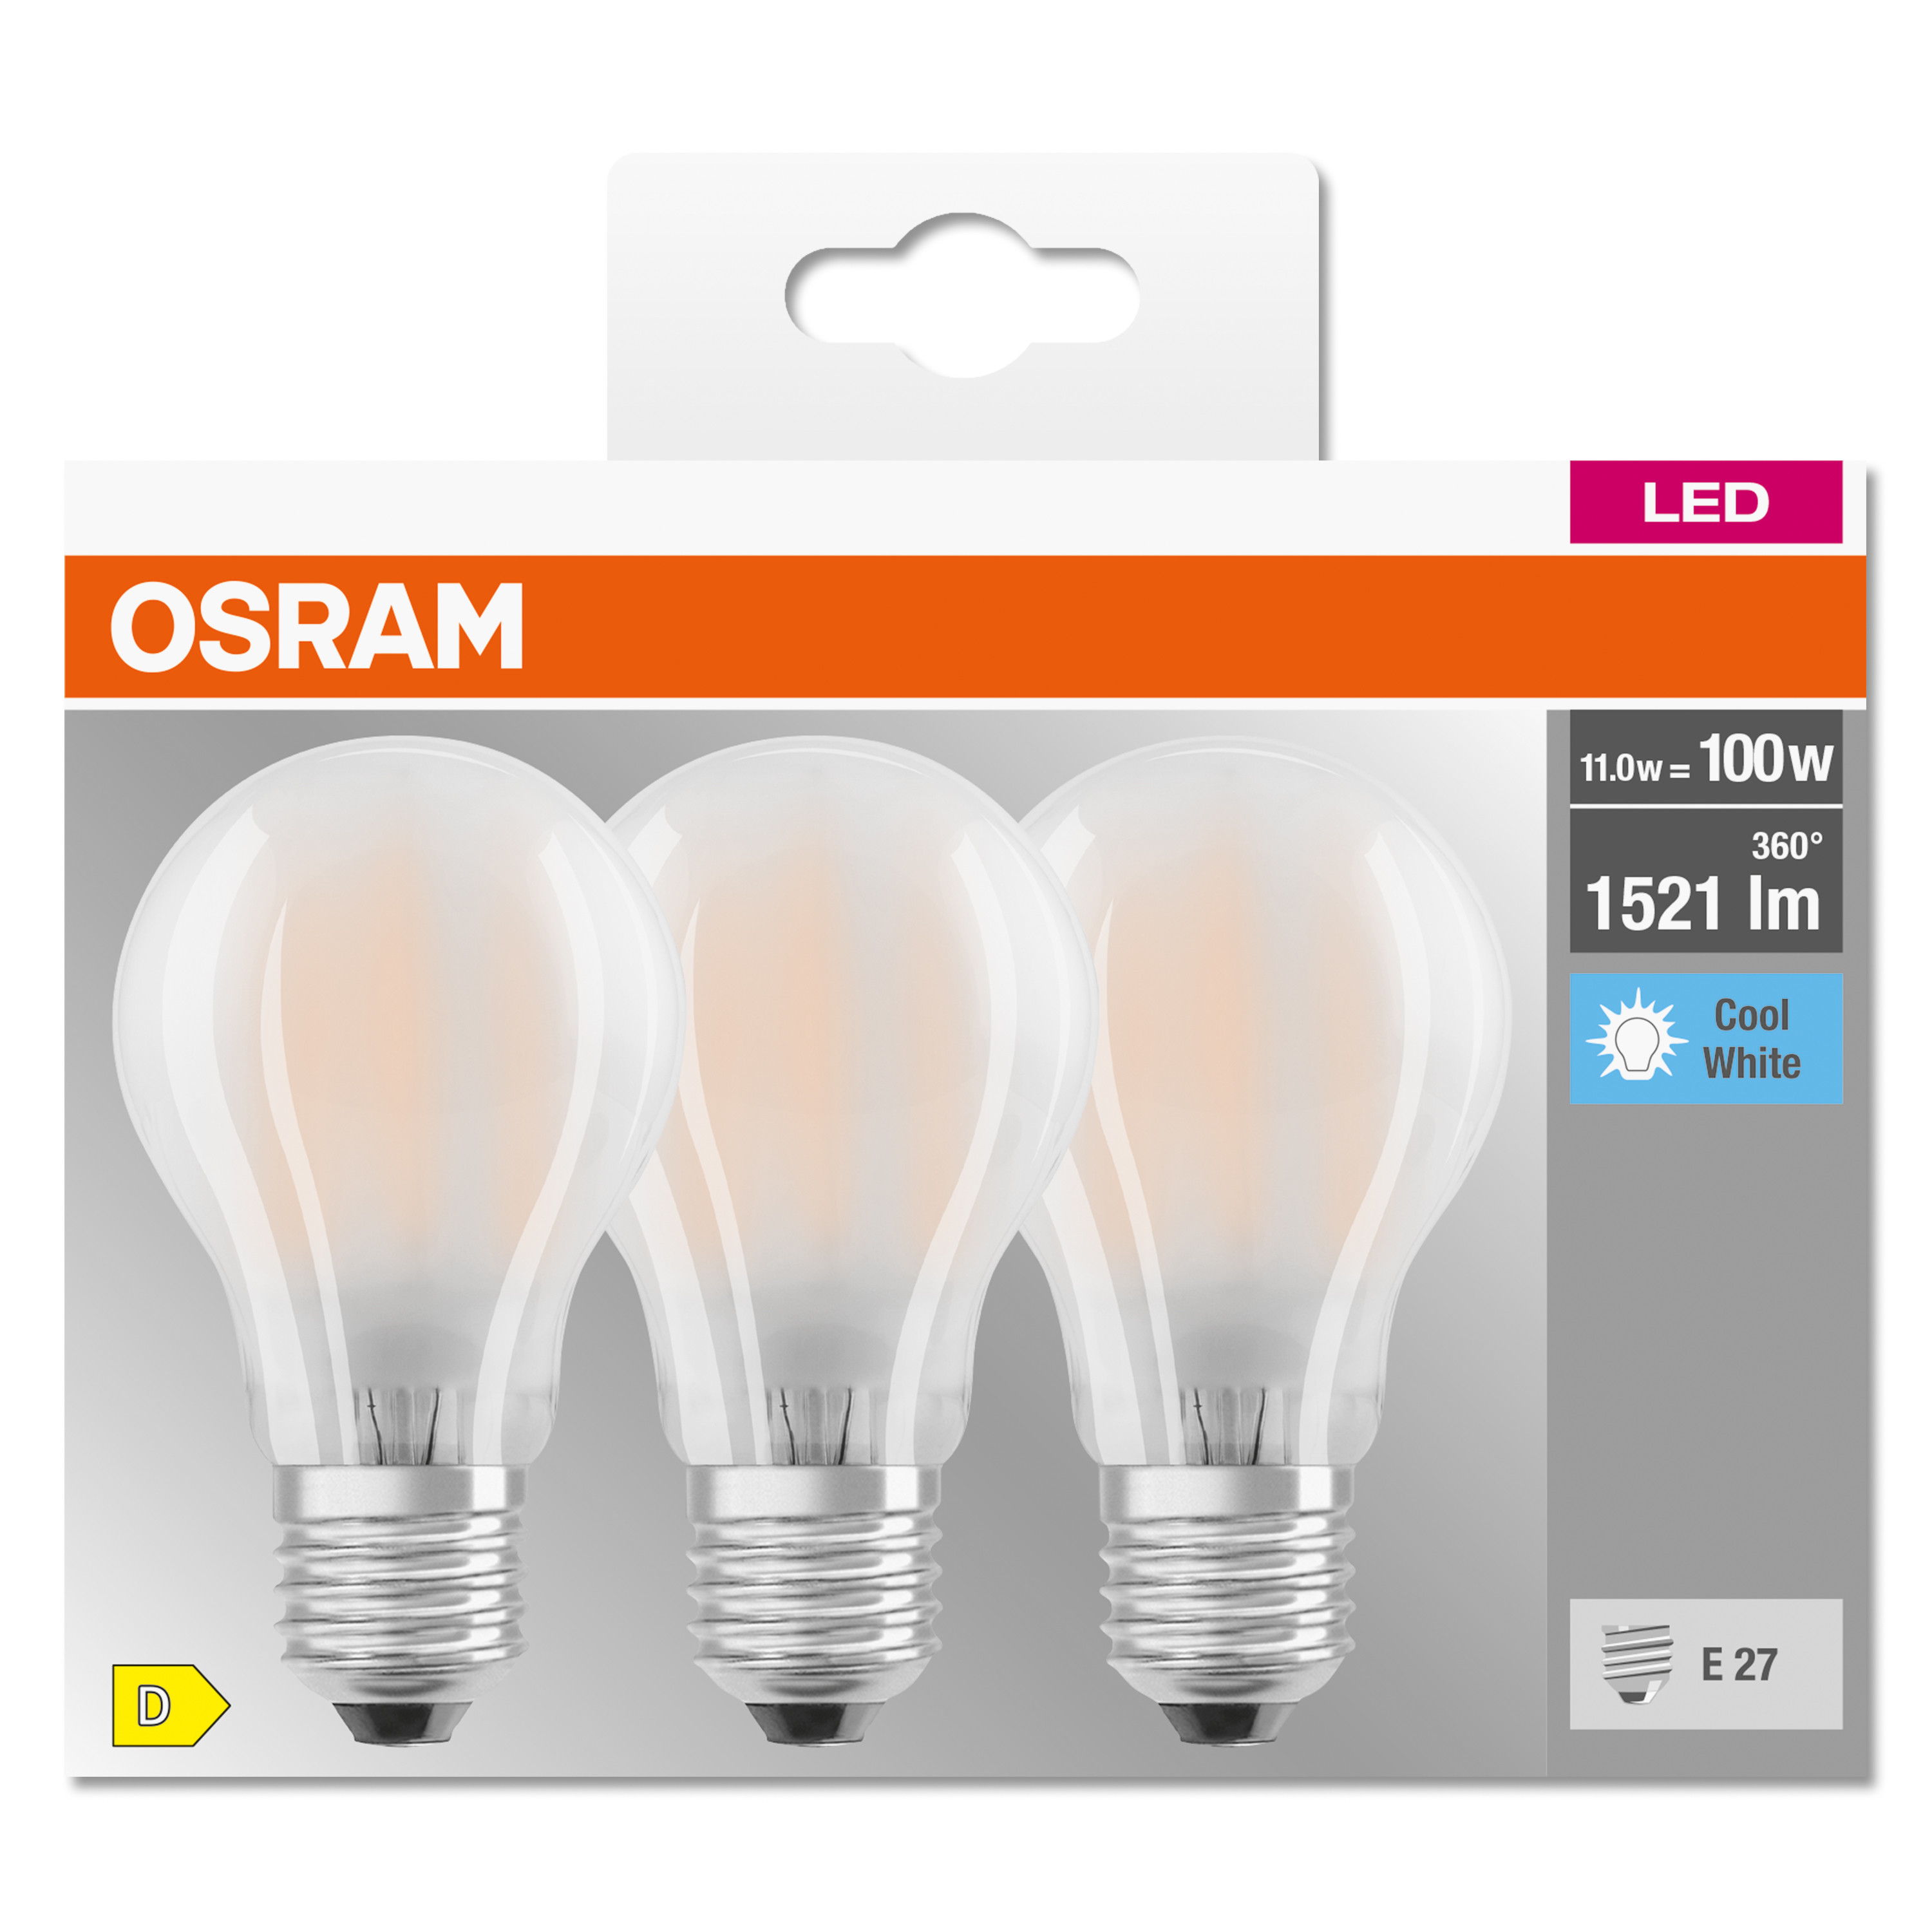 LED lumen 1521 A CLASSIC LED BASE Kaltweiß Lampe OSRAM 